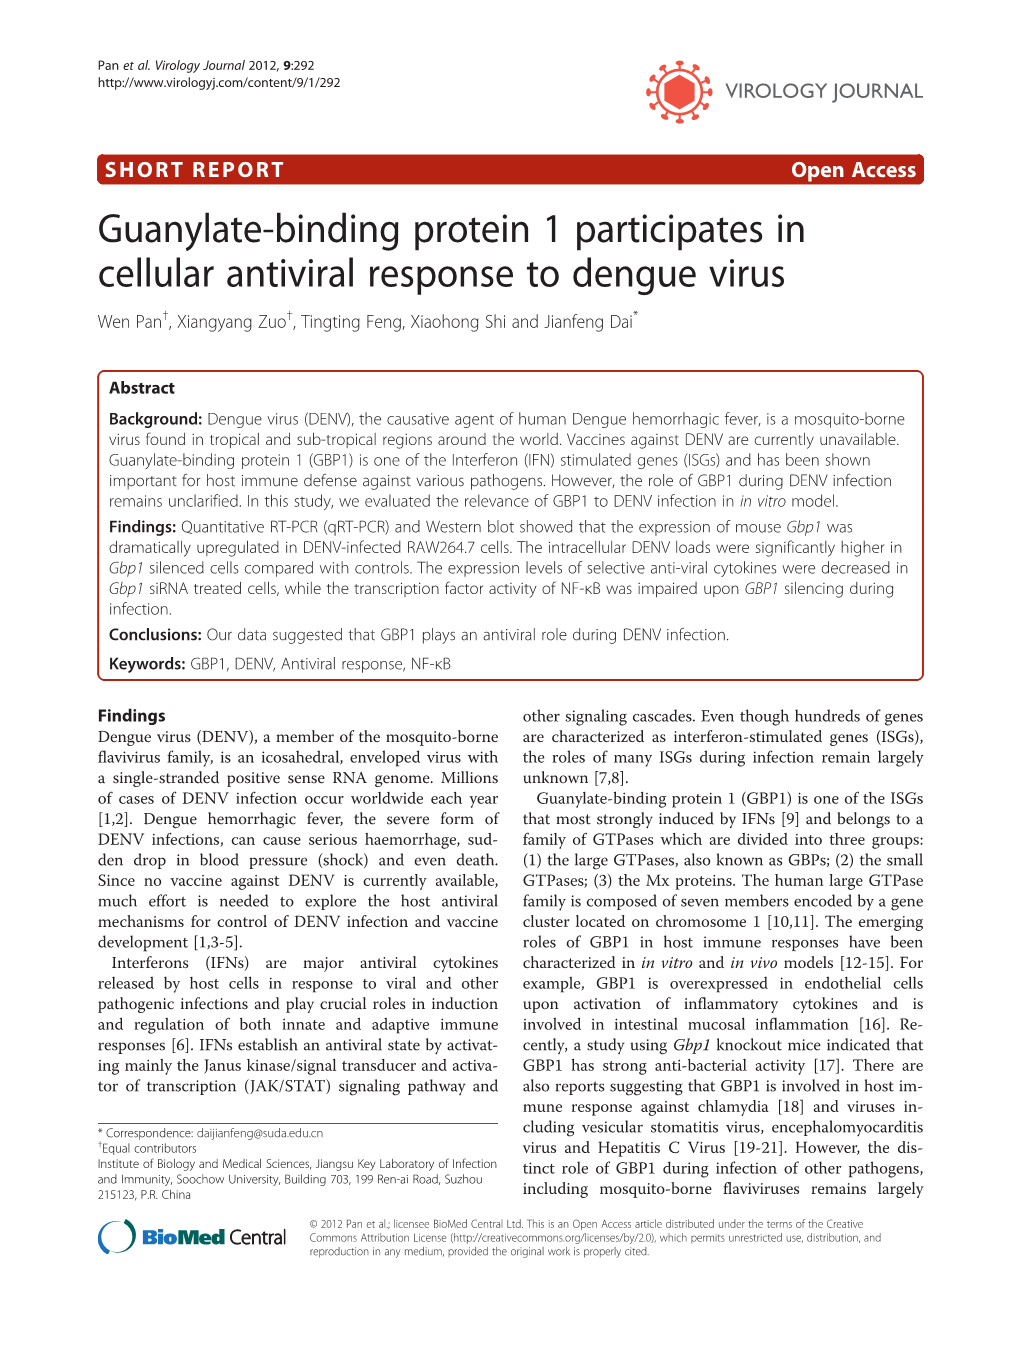 Guanylate-Binding Protein 1 Participates in Cellular Antiviral Response to Dengue Virus Wen Pan†, Xiangyang Zuo†, Tingting Feng, Xiaohong Shi and Jianfeng Dai*